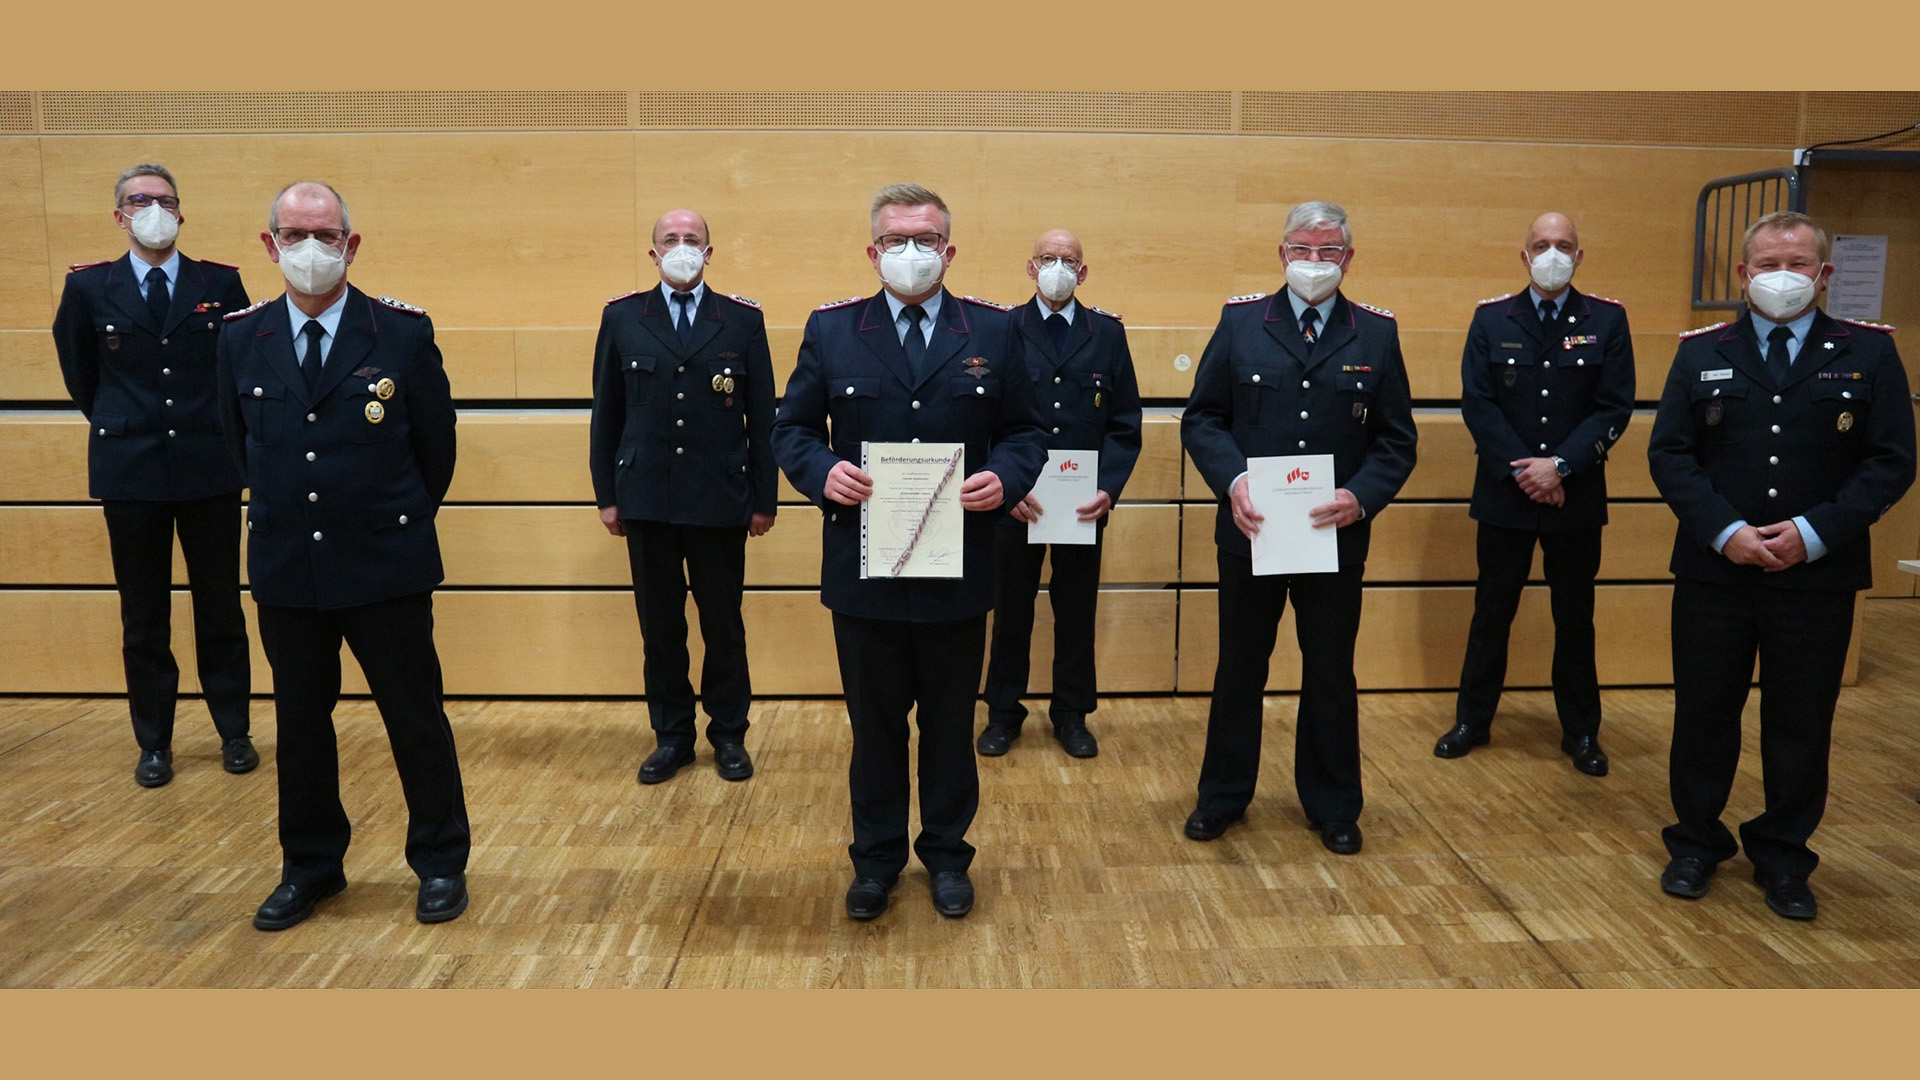 Acht Feuerwehrmänner in Uniform, zum Teil halten sie Urkunden in den Händen